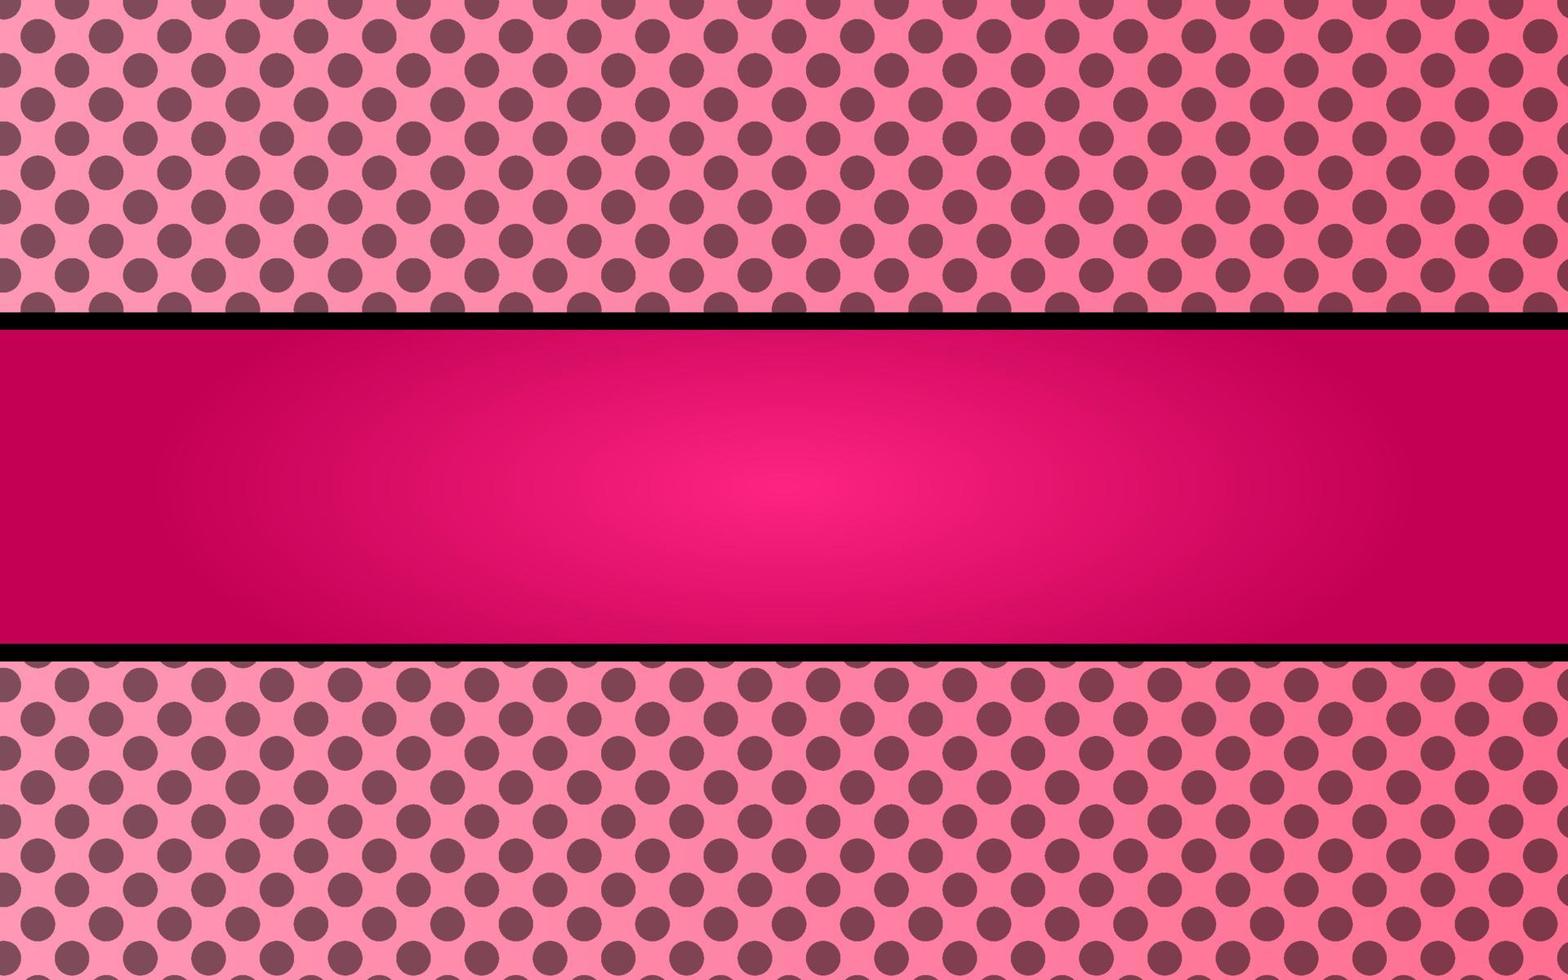 Pink magenta black dot line frame background. Vector illustration